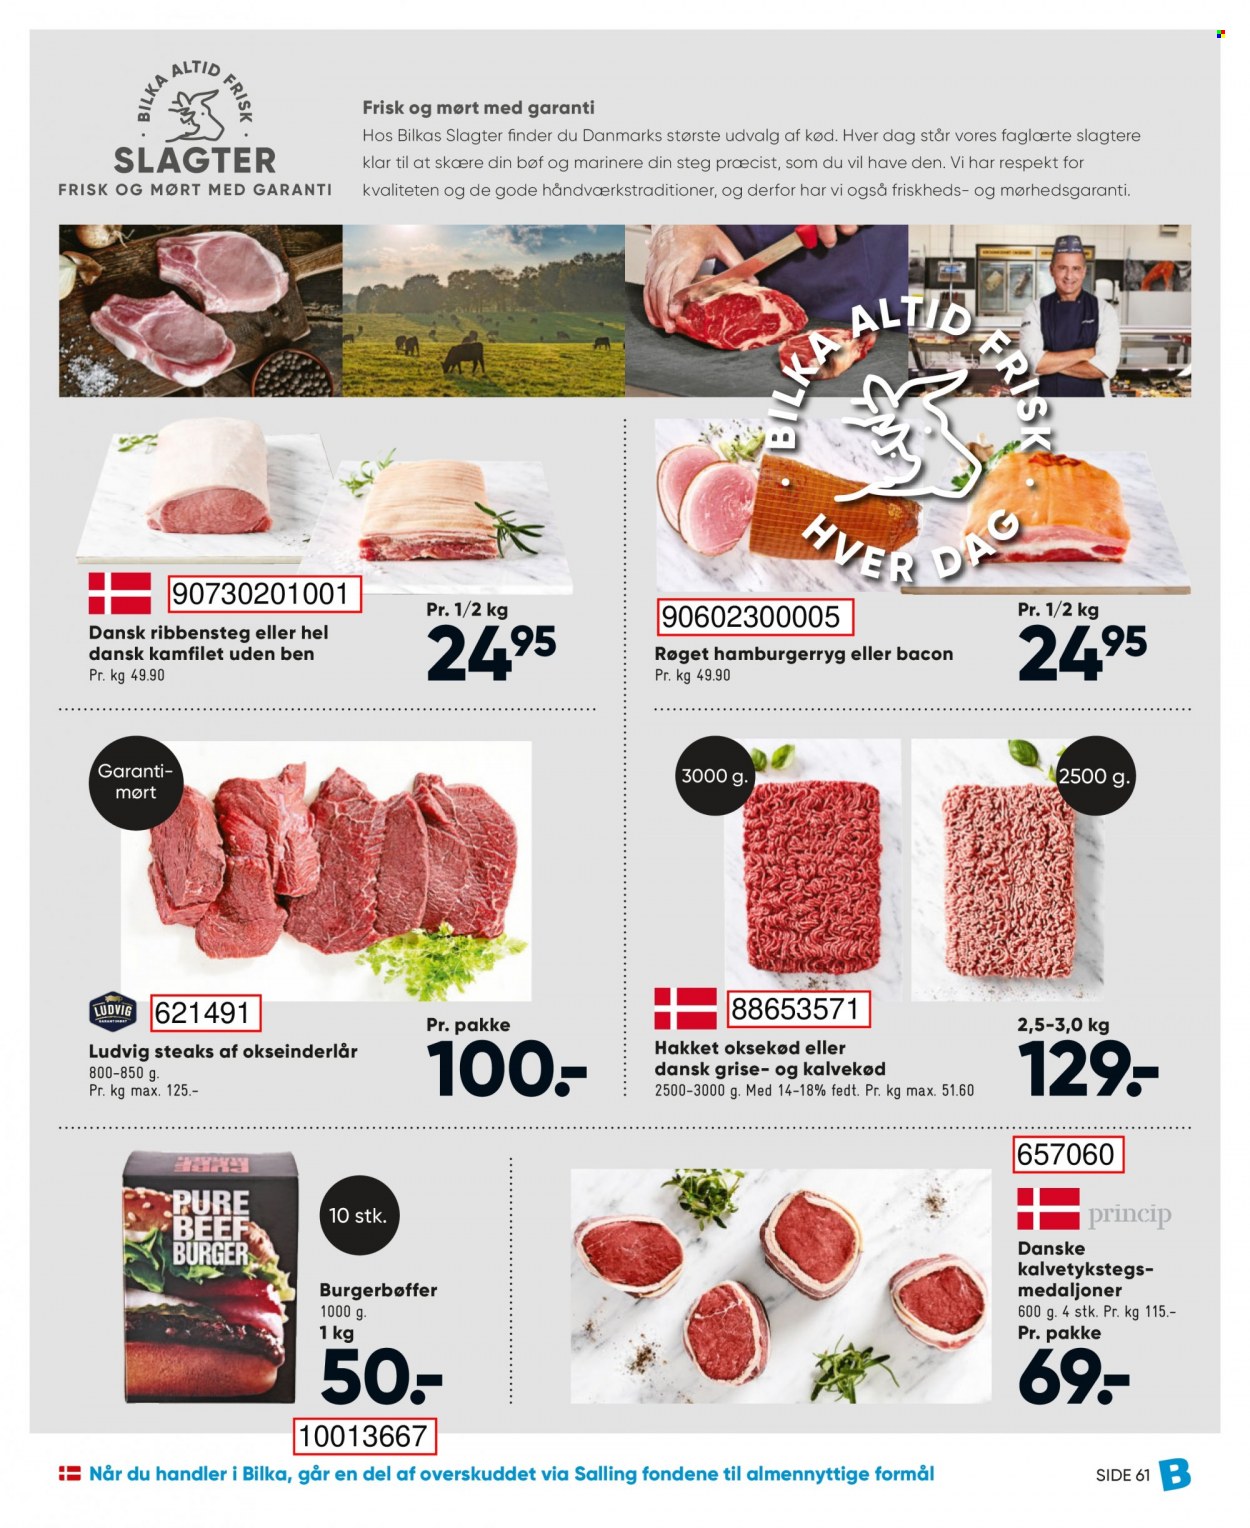 thumbnail - Bilka tilbud  - 24.9.2021 - 30.9.2021 - tilbudsprodukter - hakket oksekød, kalvekød, okseinderlår, oksekød, hamburgerryg, dansk gris, burgerbøffer, bacon. Side 77.